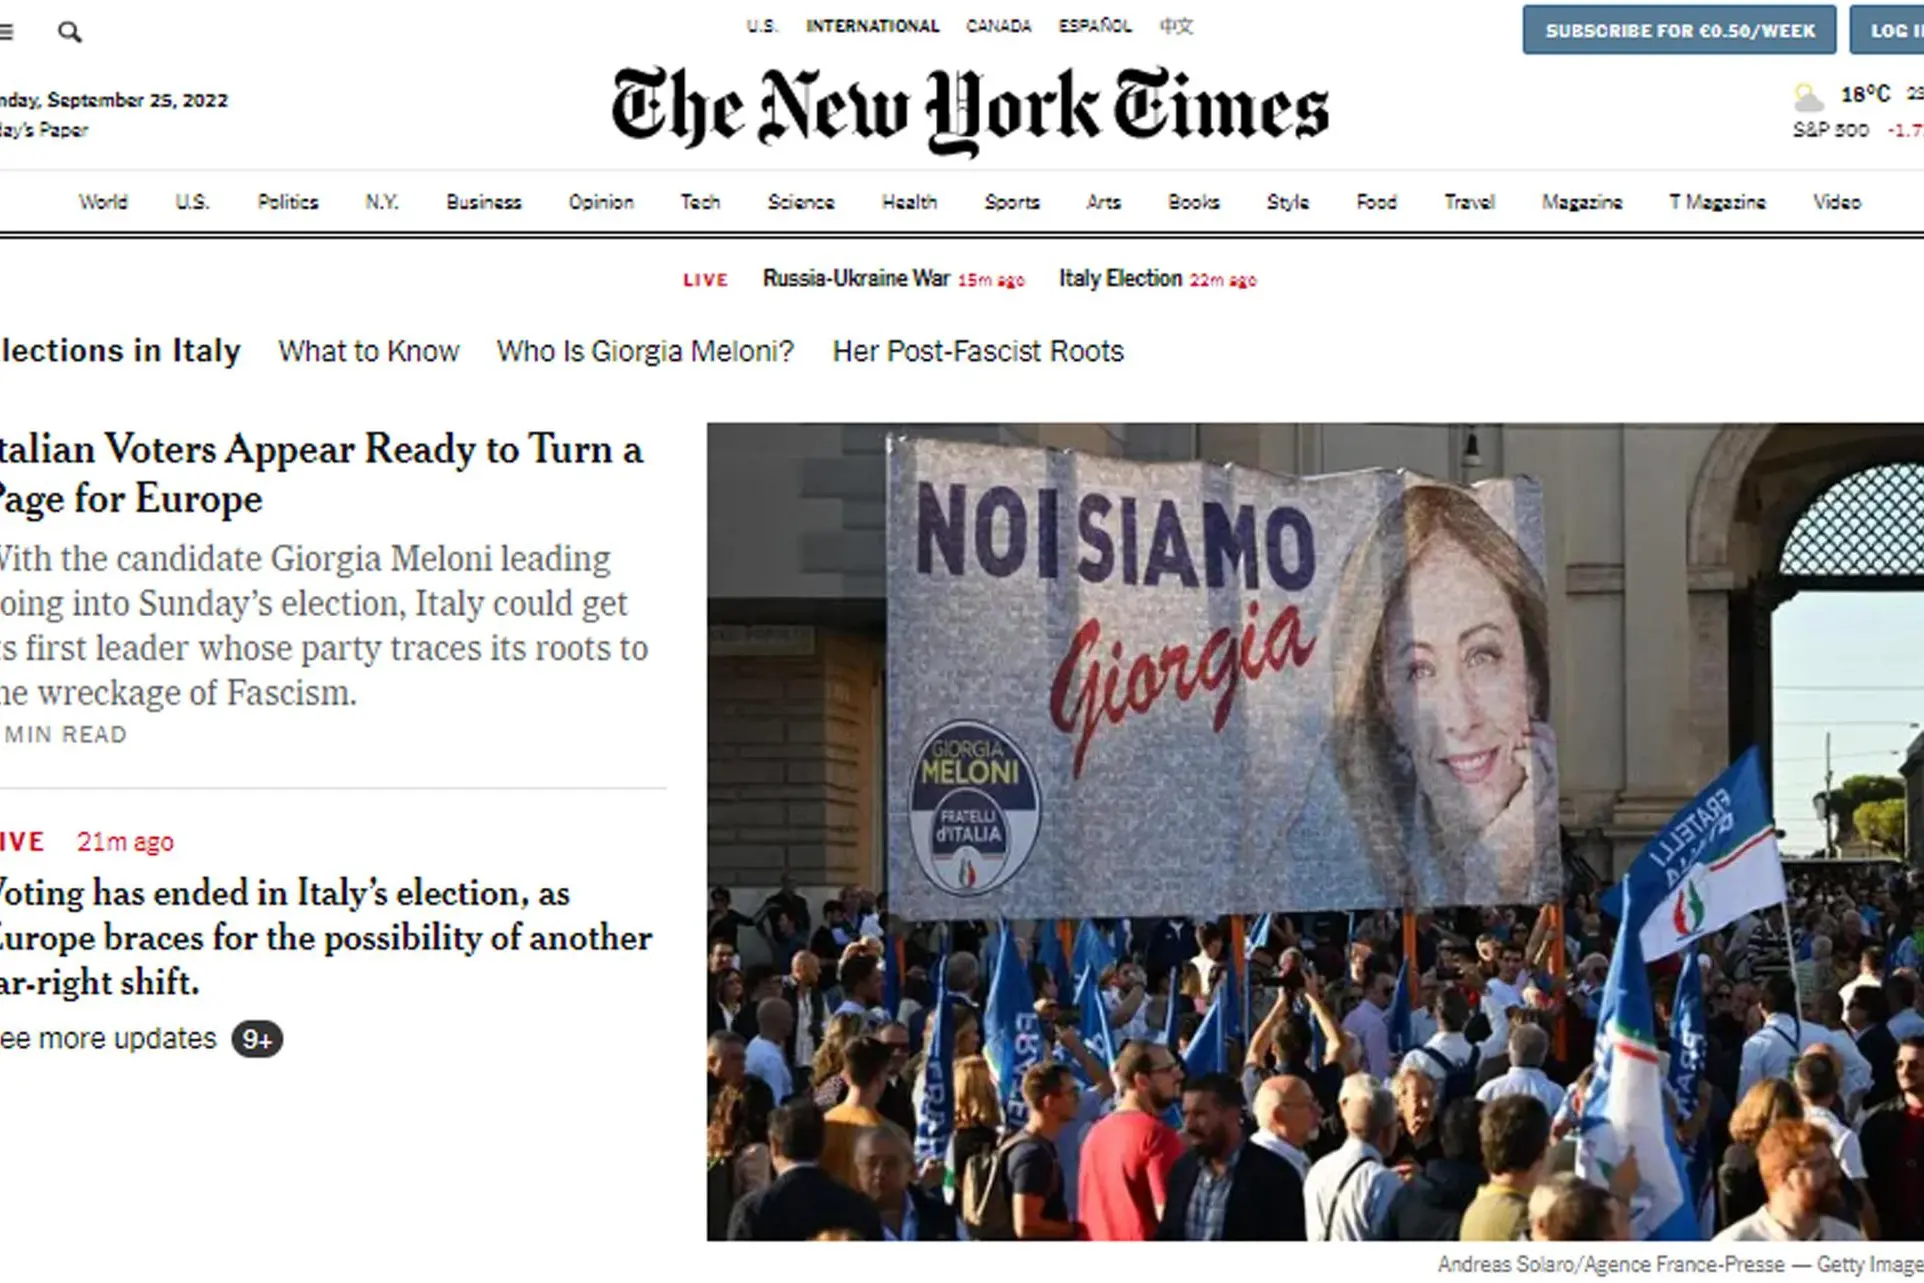 &quot;Con i risultati del voto in Italia, l'Europa si prepara ad un altro spostamento a destra&quot;, scrive il New York Times